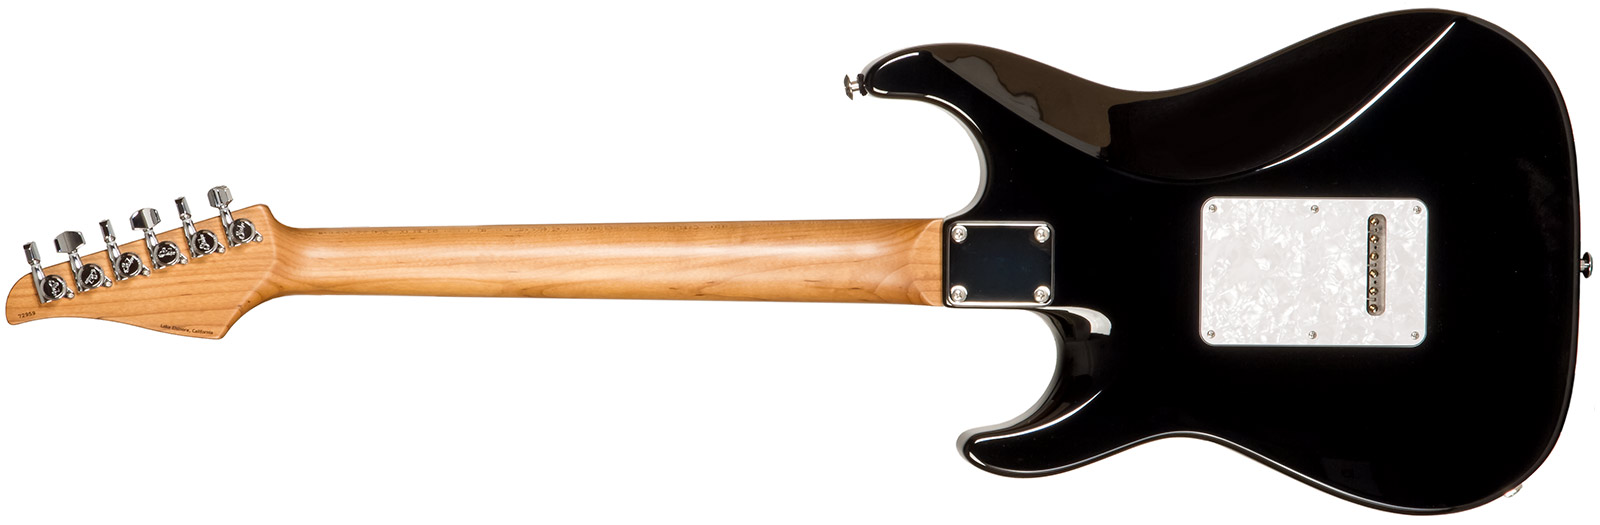 Suhr Standard Plus Usa Hss Trem Pf #72959 - Bengal Burst - Elektrische gitaar in Str-vorm - Variation 1